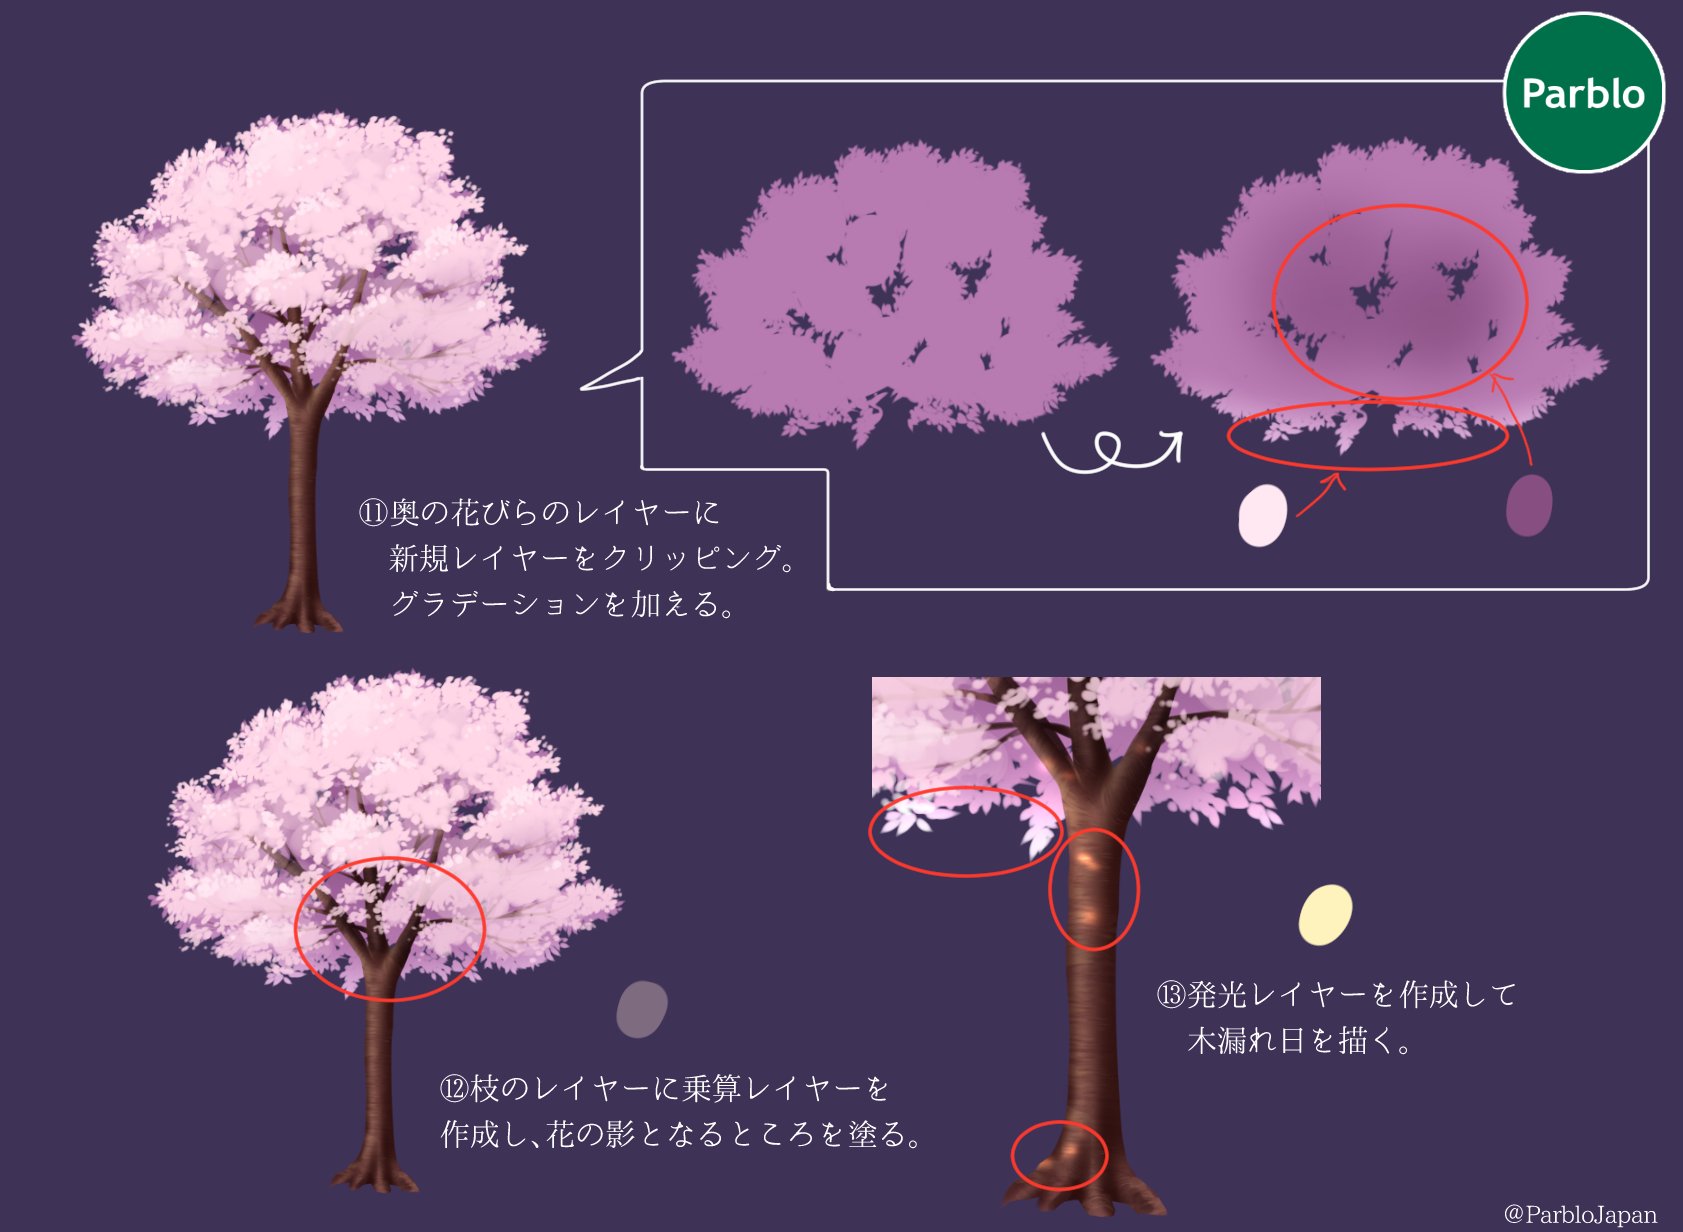 Parblo Japan Sur Twitter イラストでお花見しよう 本日は満開の桜の描き方 桜いっぱいのイラストに挑戦してみよう イラスト好きと繋がりたい 絵描きさんと繋がりたい Parblo T Co 5nkkmpmcyr Twitter